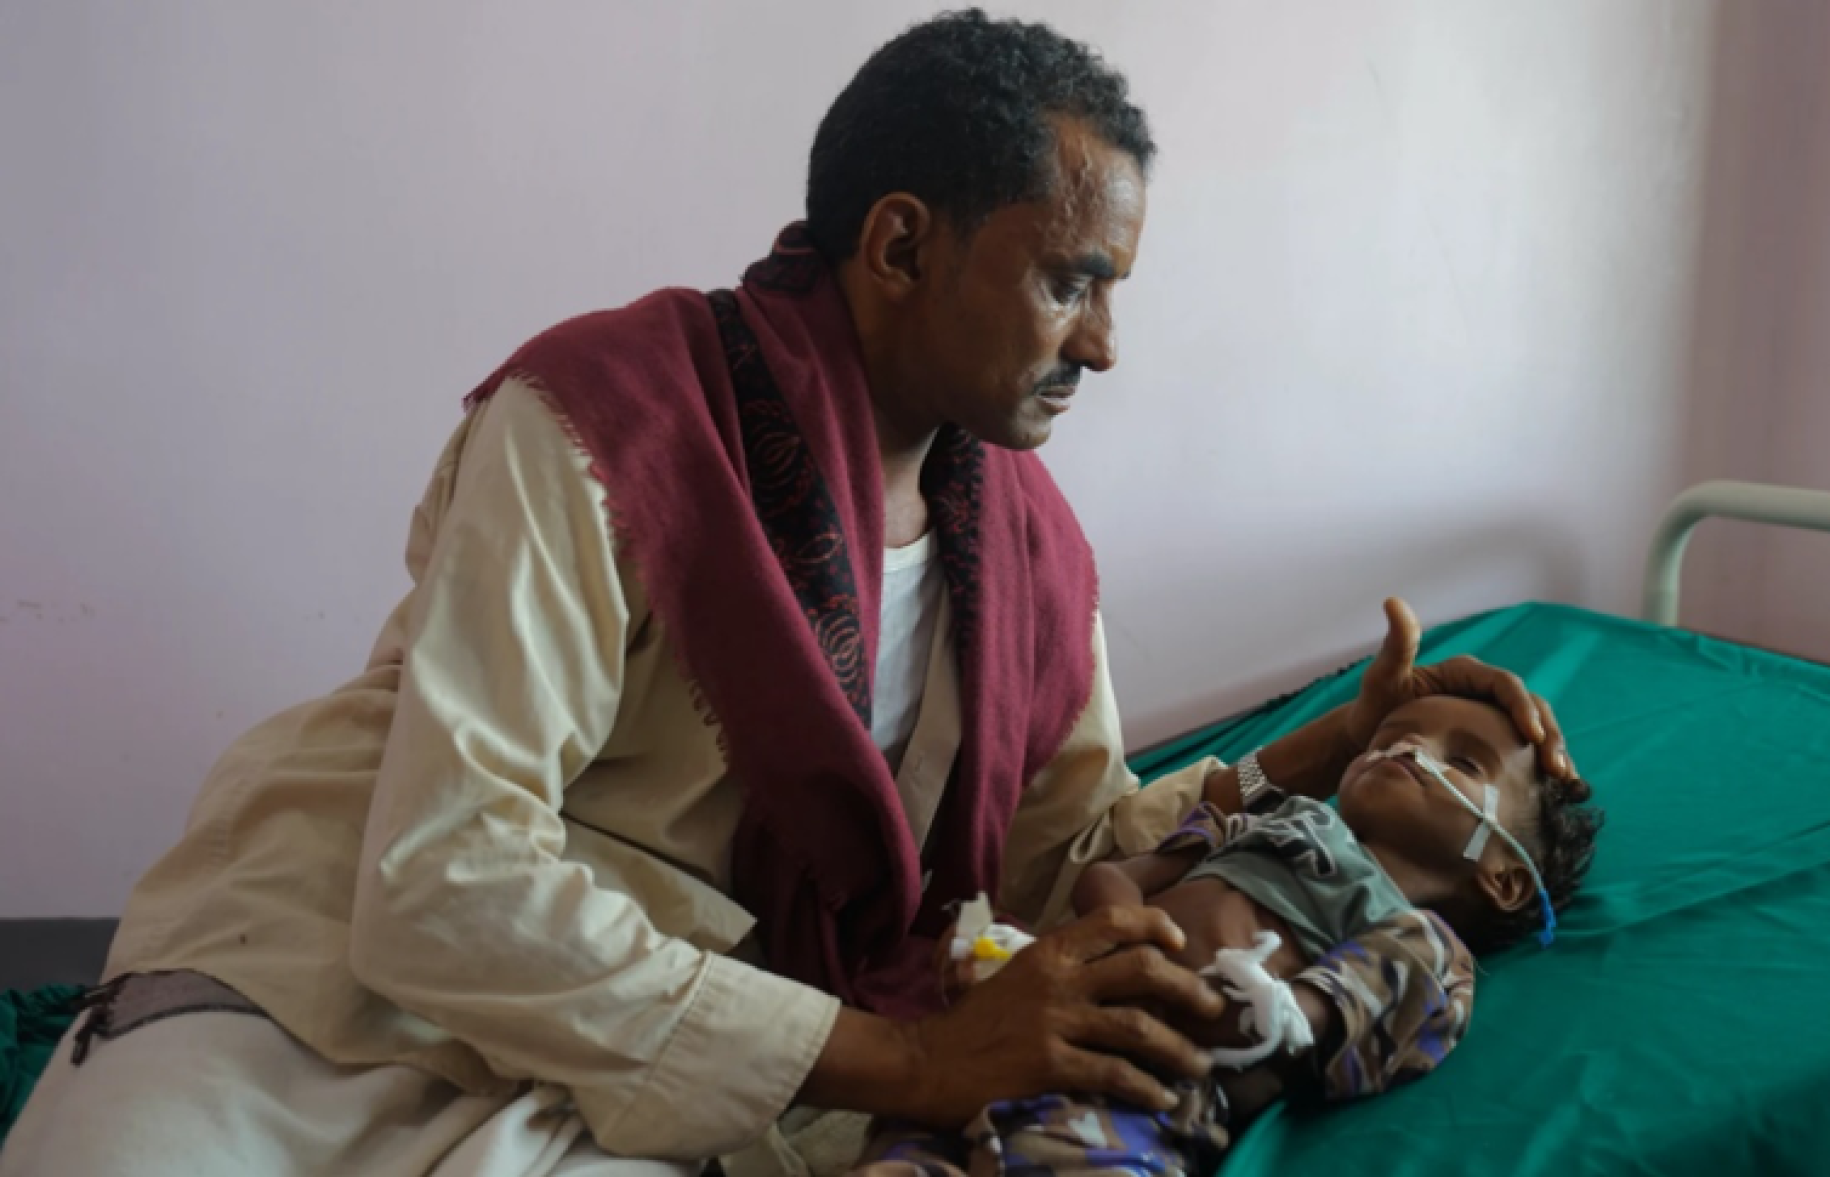 Une jeune enfant souffrant de malnutrition aiguë est allongé sur un lit d’hôpital tandis que son oncle, le visage fermé, se penche sur lui et pose les mains sur sa tête et ses pieds.